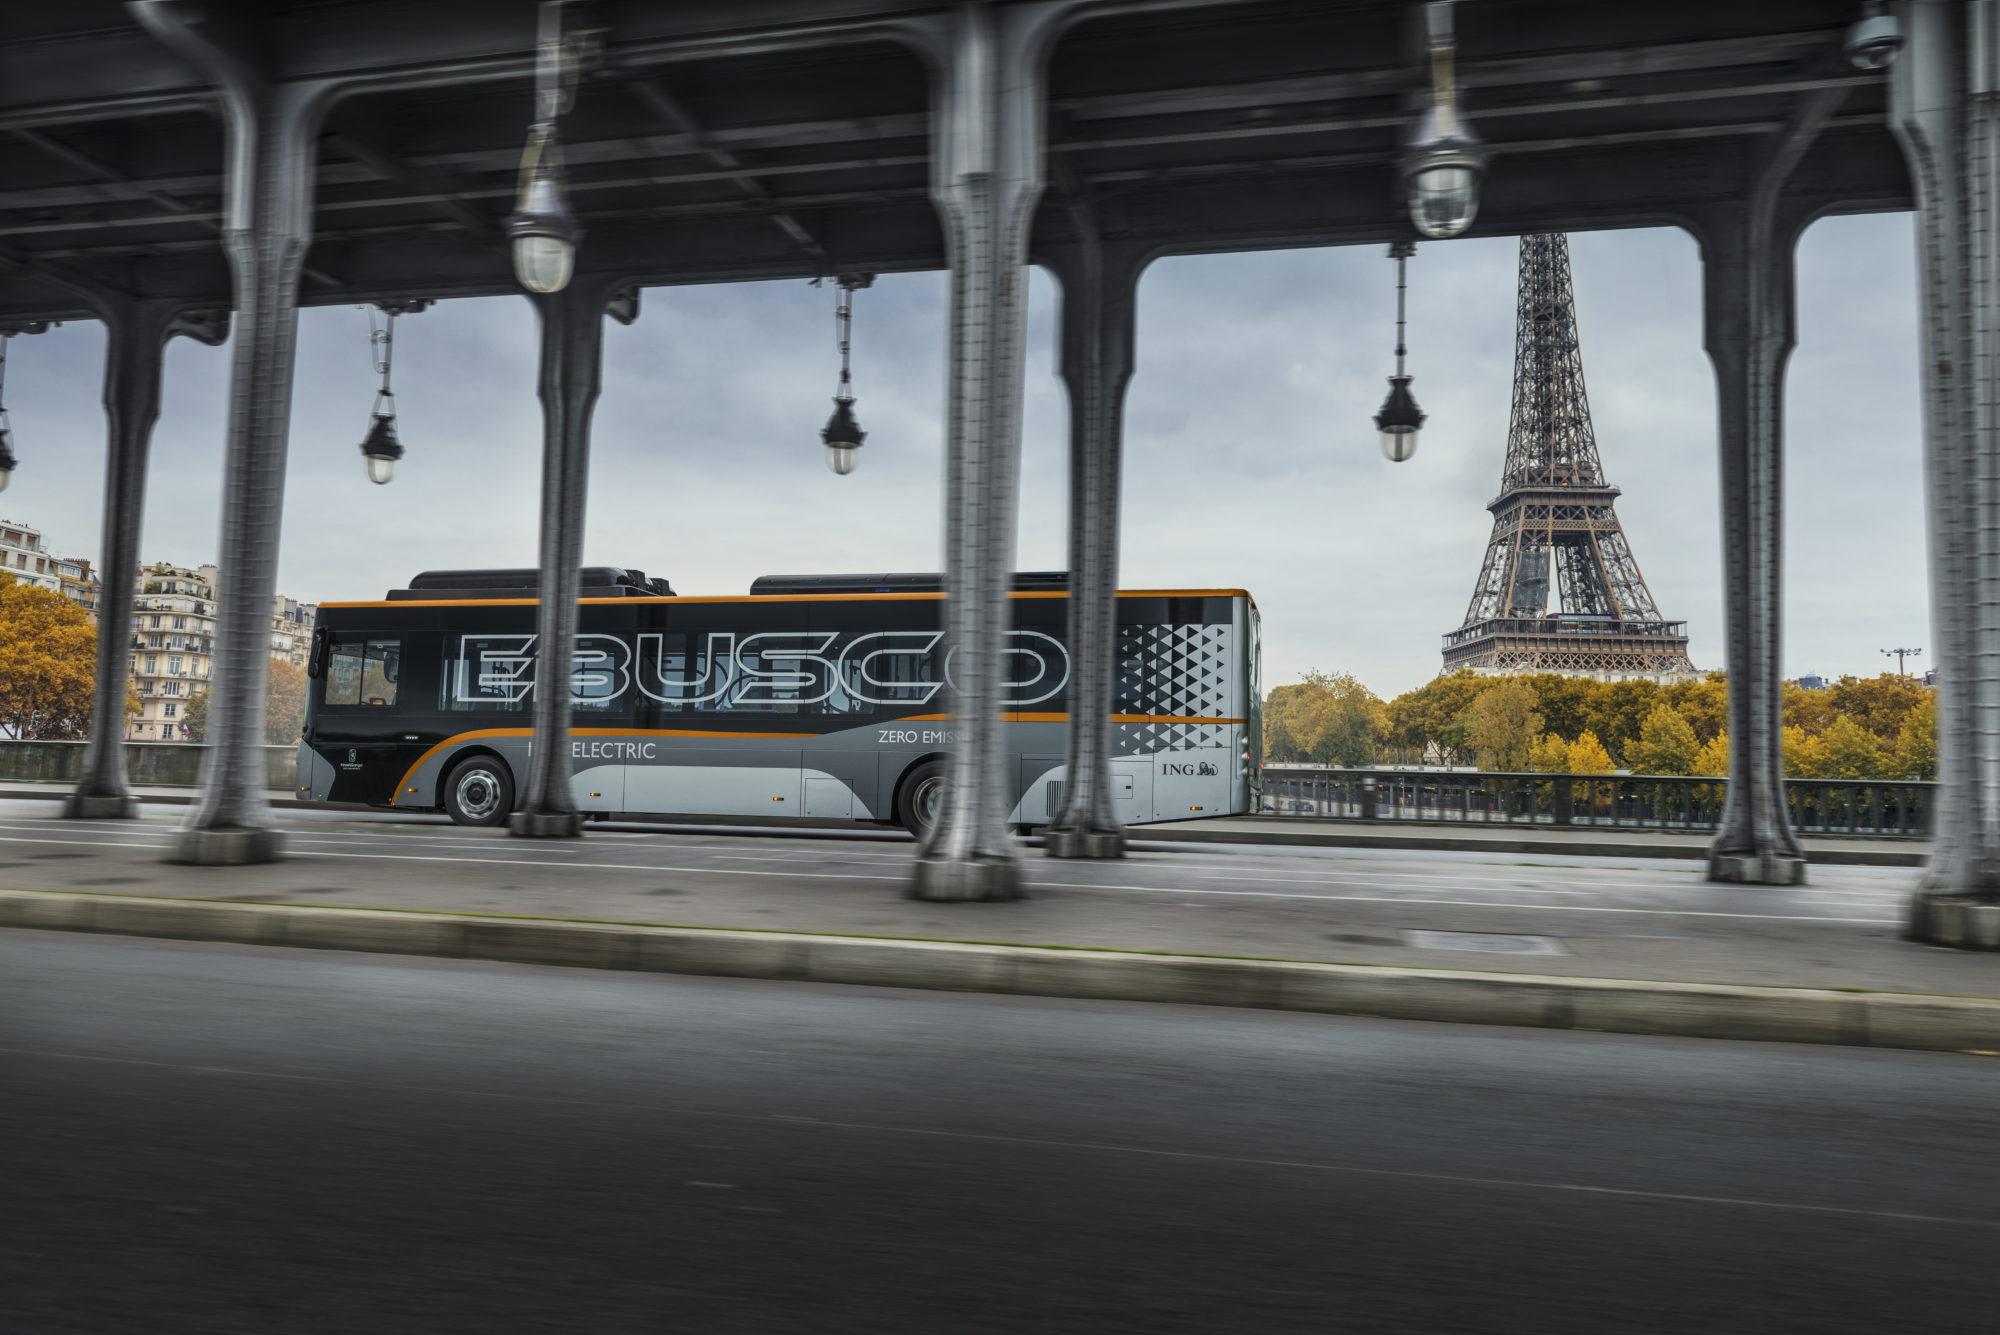 Bus 1.0 Paris